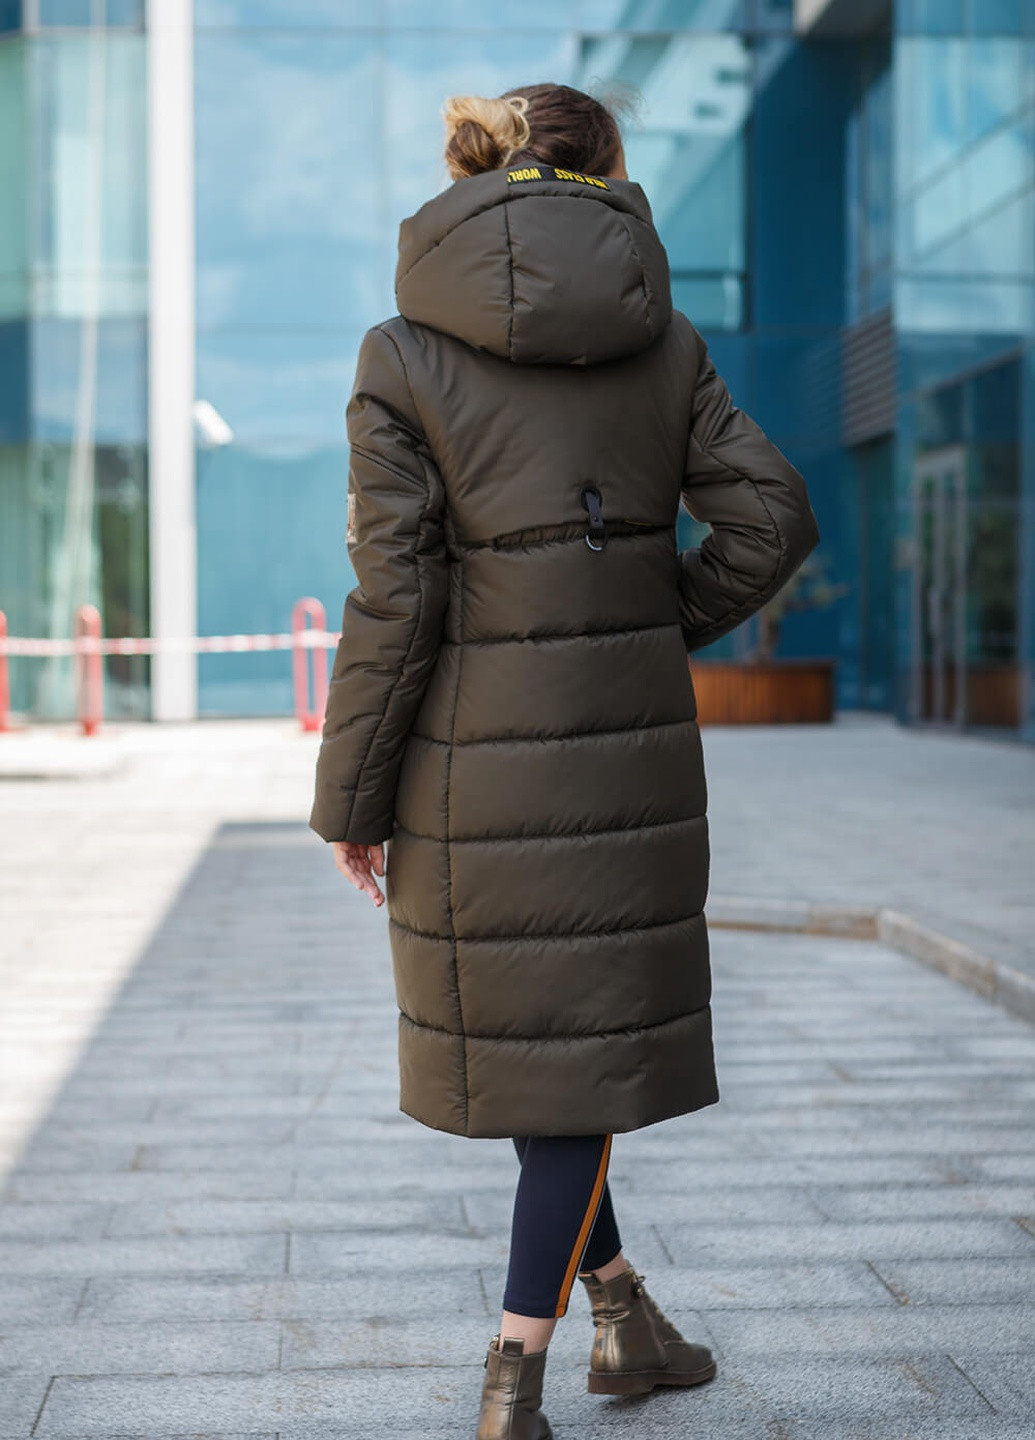 Оливковая (хаки) зимняя куртка-пальто одри MioRichi